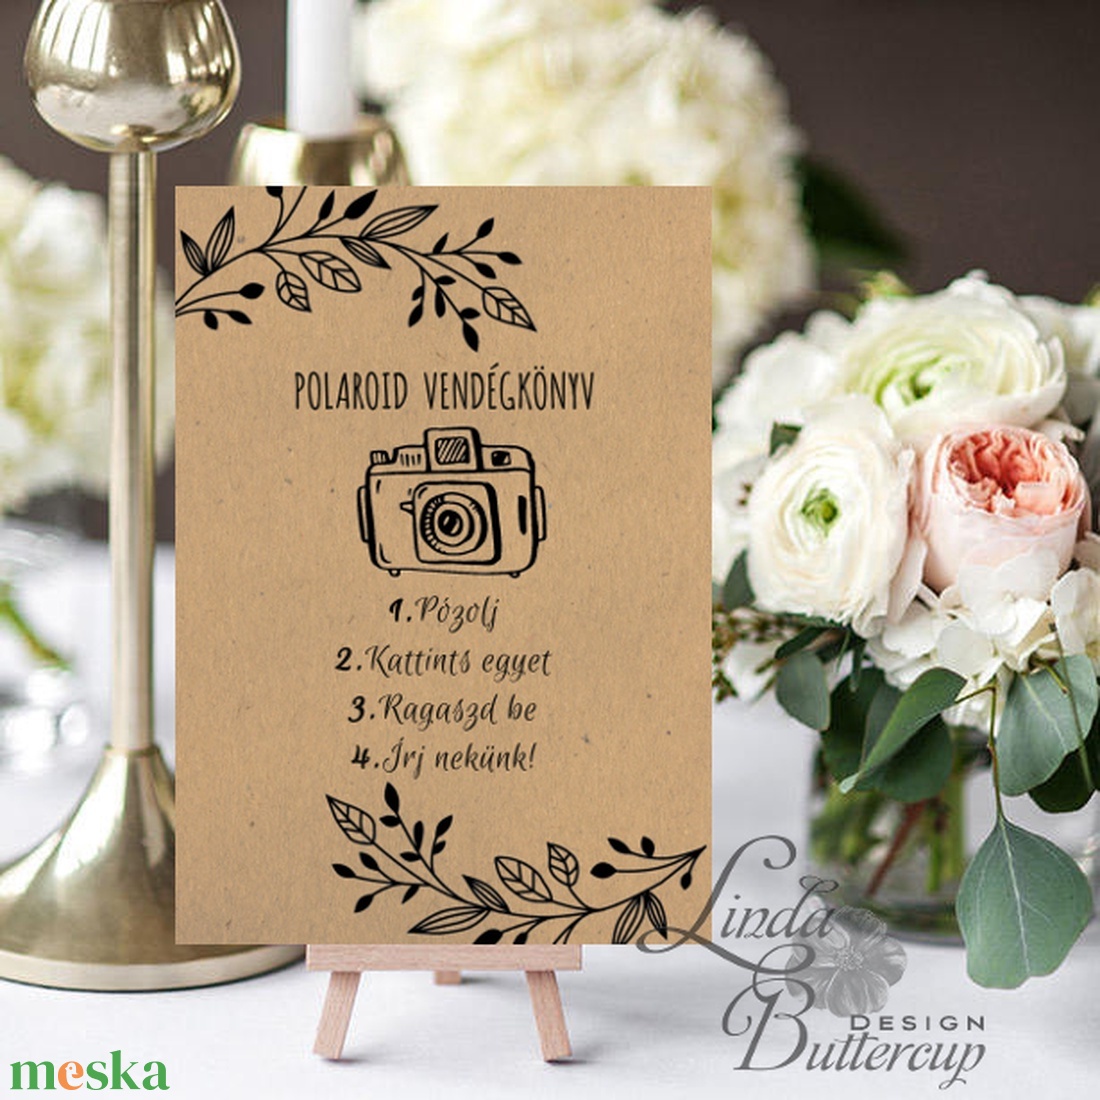 Polaroid fotó Esküvői Felirat A4, fénykép, fotó albumhoz, Esküvői kép, Dekor, Esküvői felirat, natúr, kraft, barna - esküvő - dekoráció - helyszíni dekor - Meska.hu